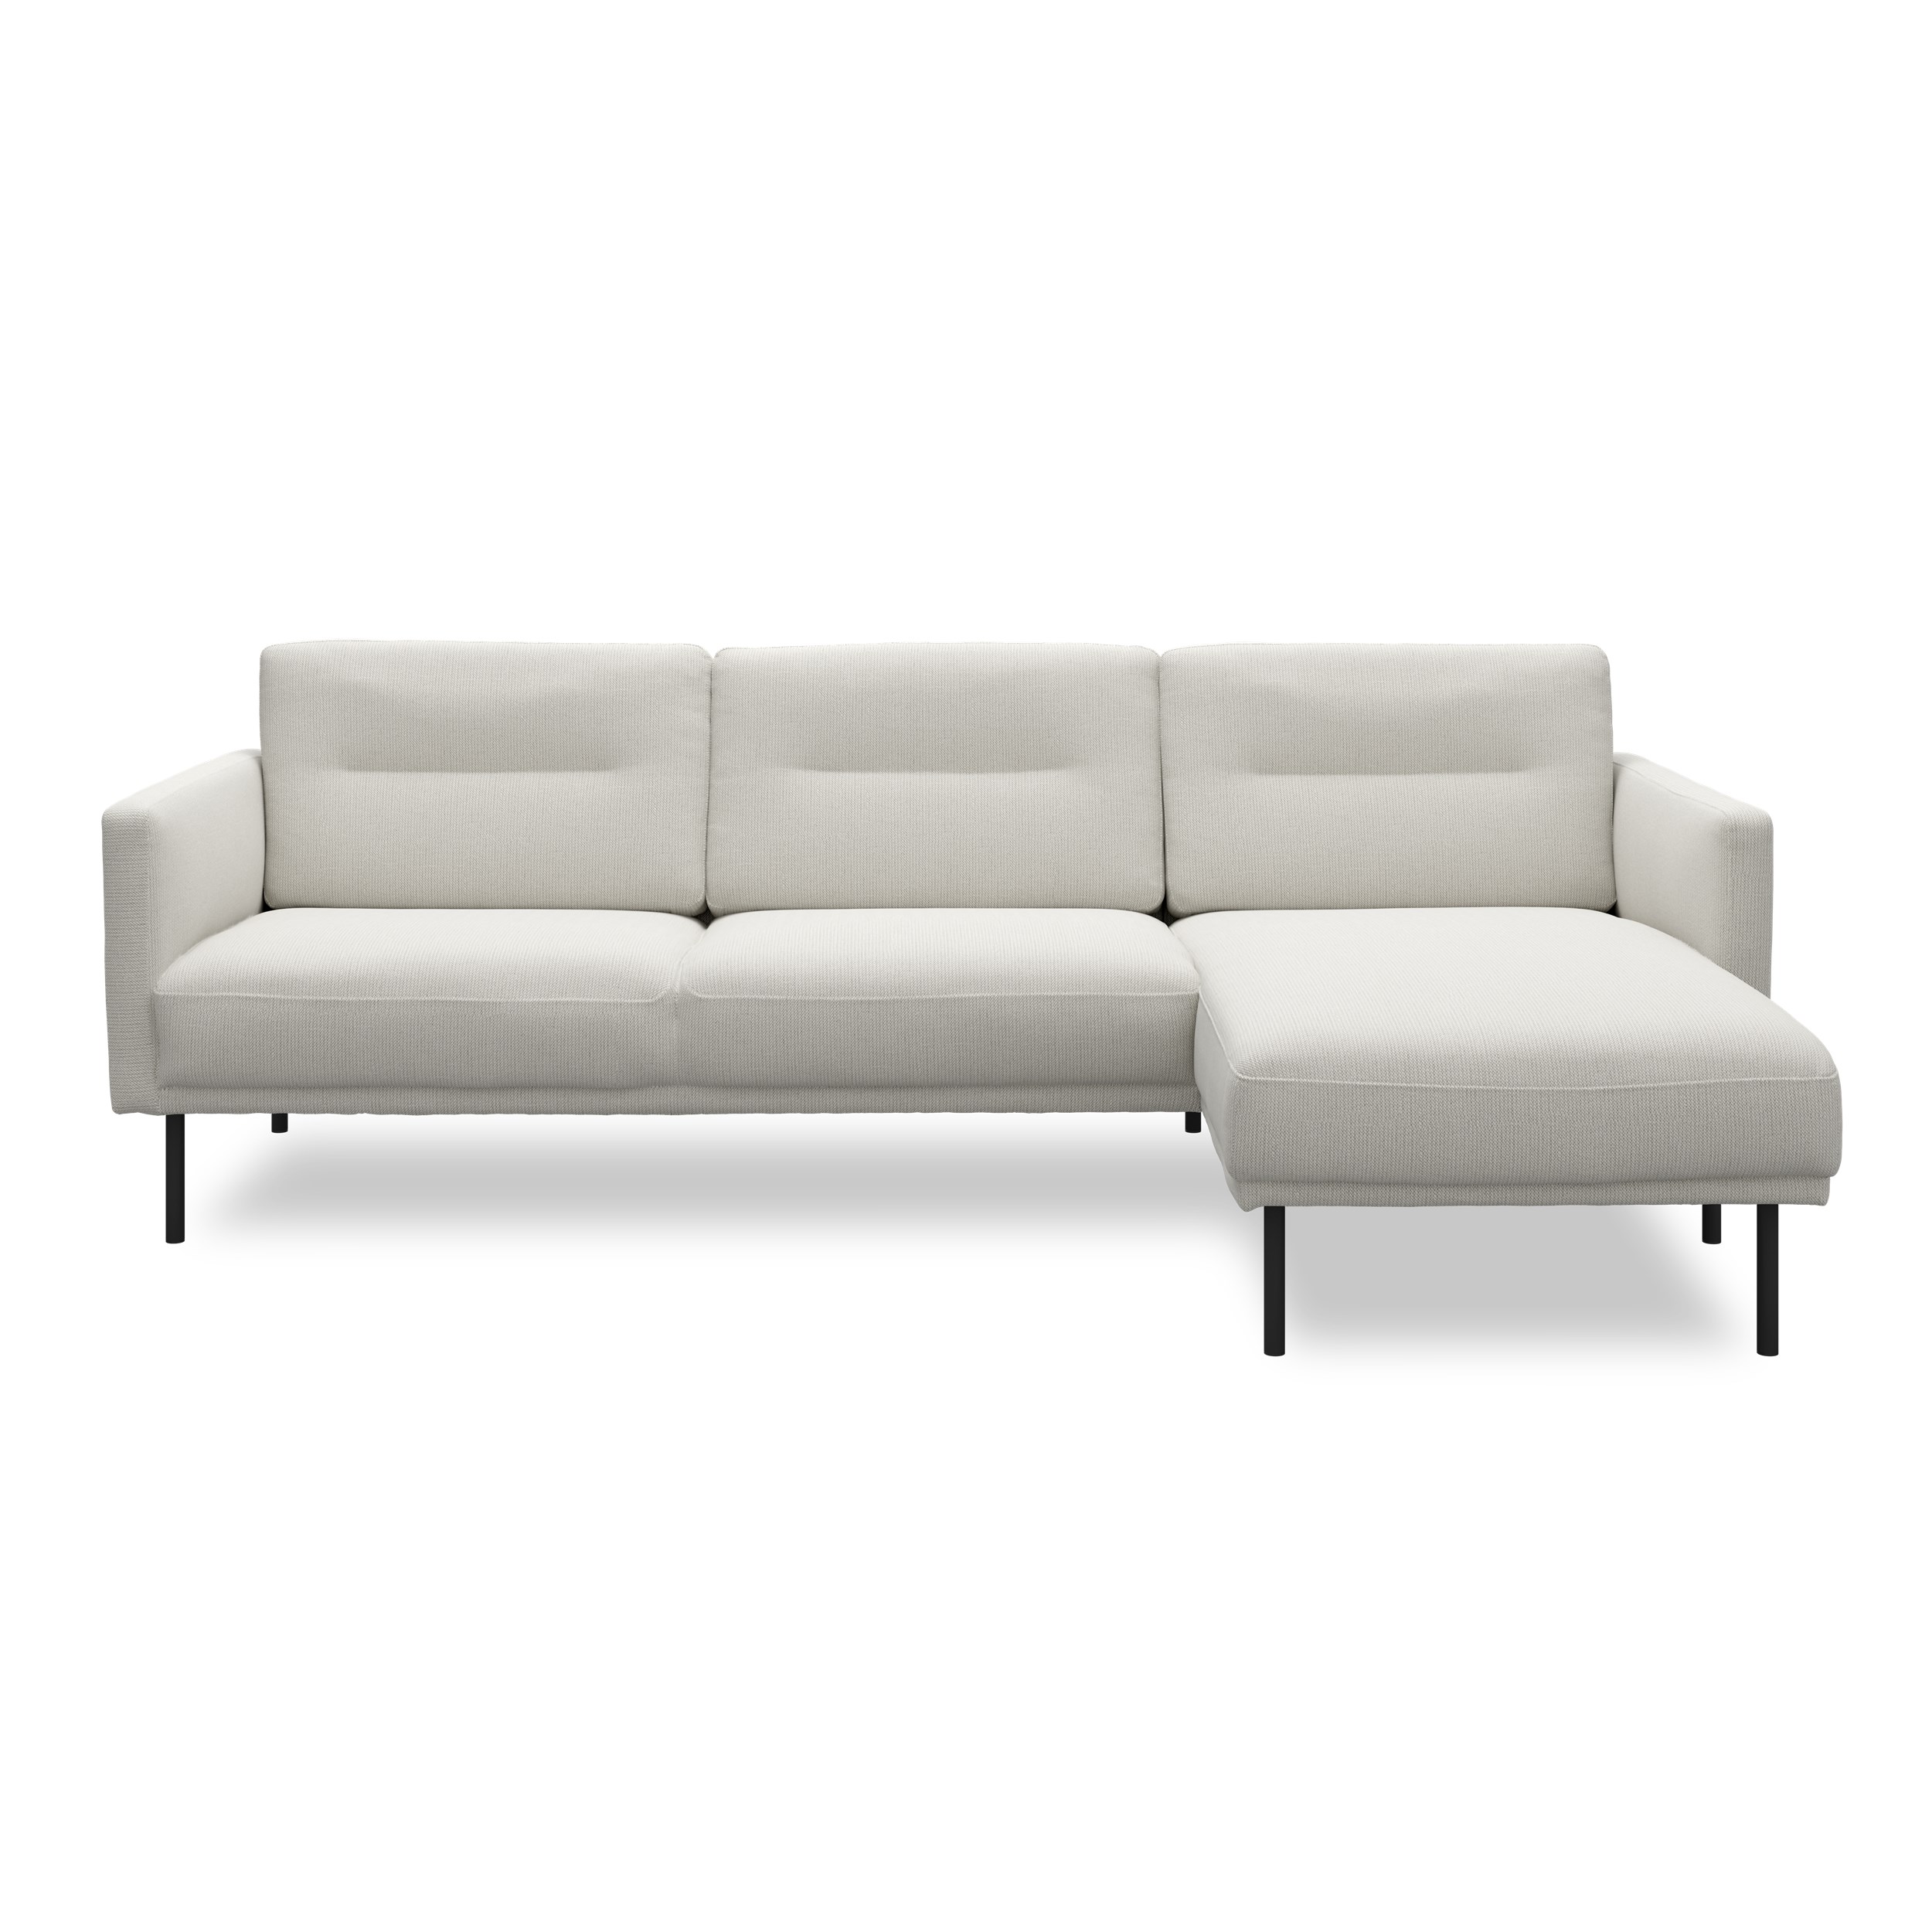 Larvik højrevendt sofa med chaiselong - Hampton 374 Beige stof og ben i sortlakeret metal